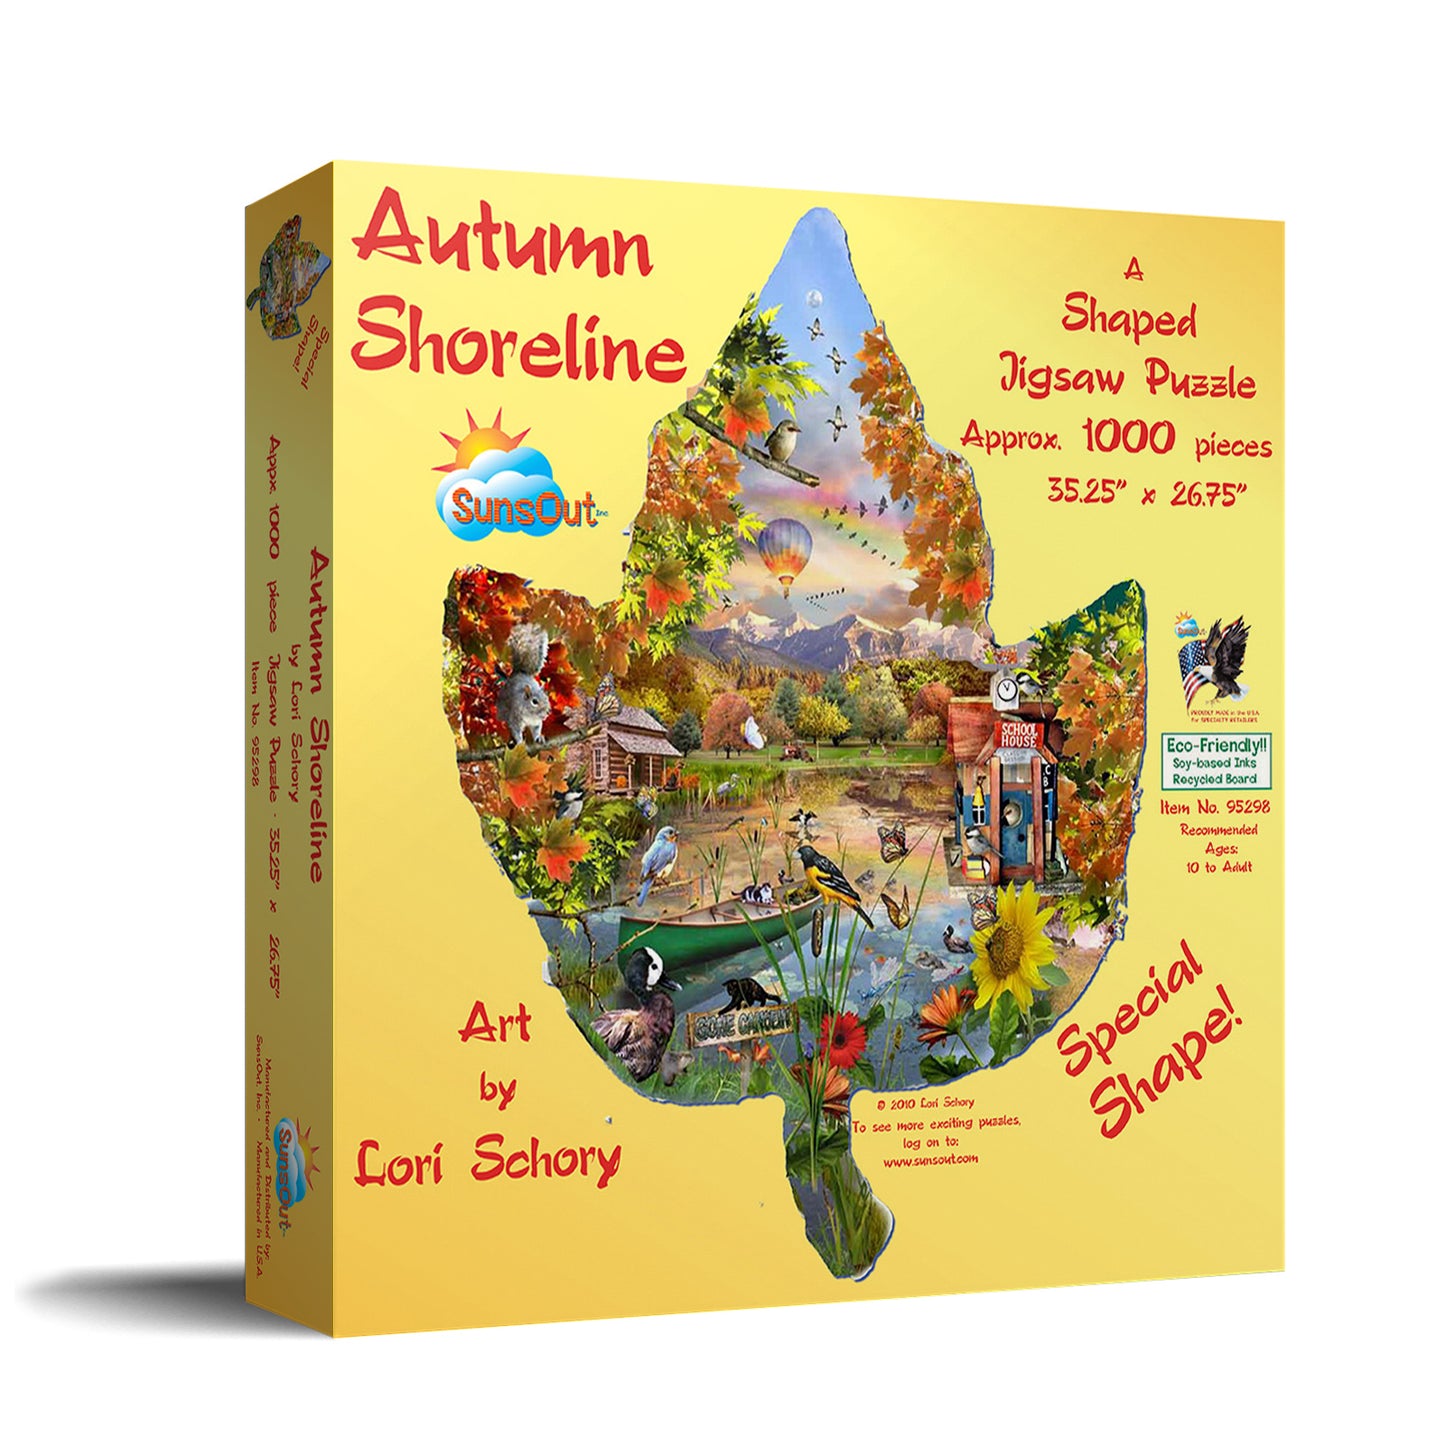 Autumn Shoreline - Shaped 1000 Piece Jigsaw Puzzle